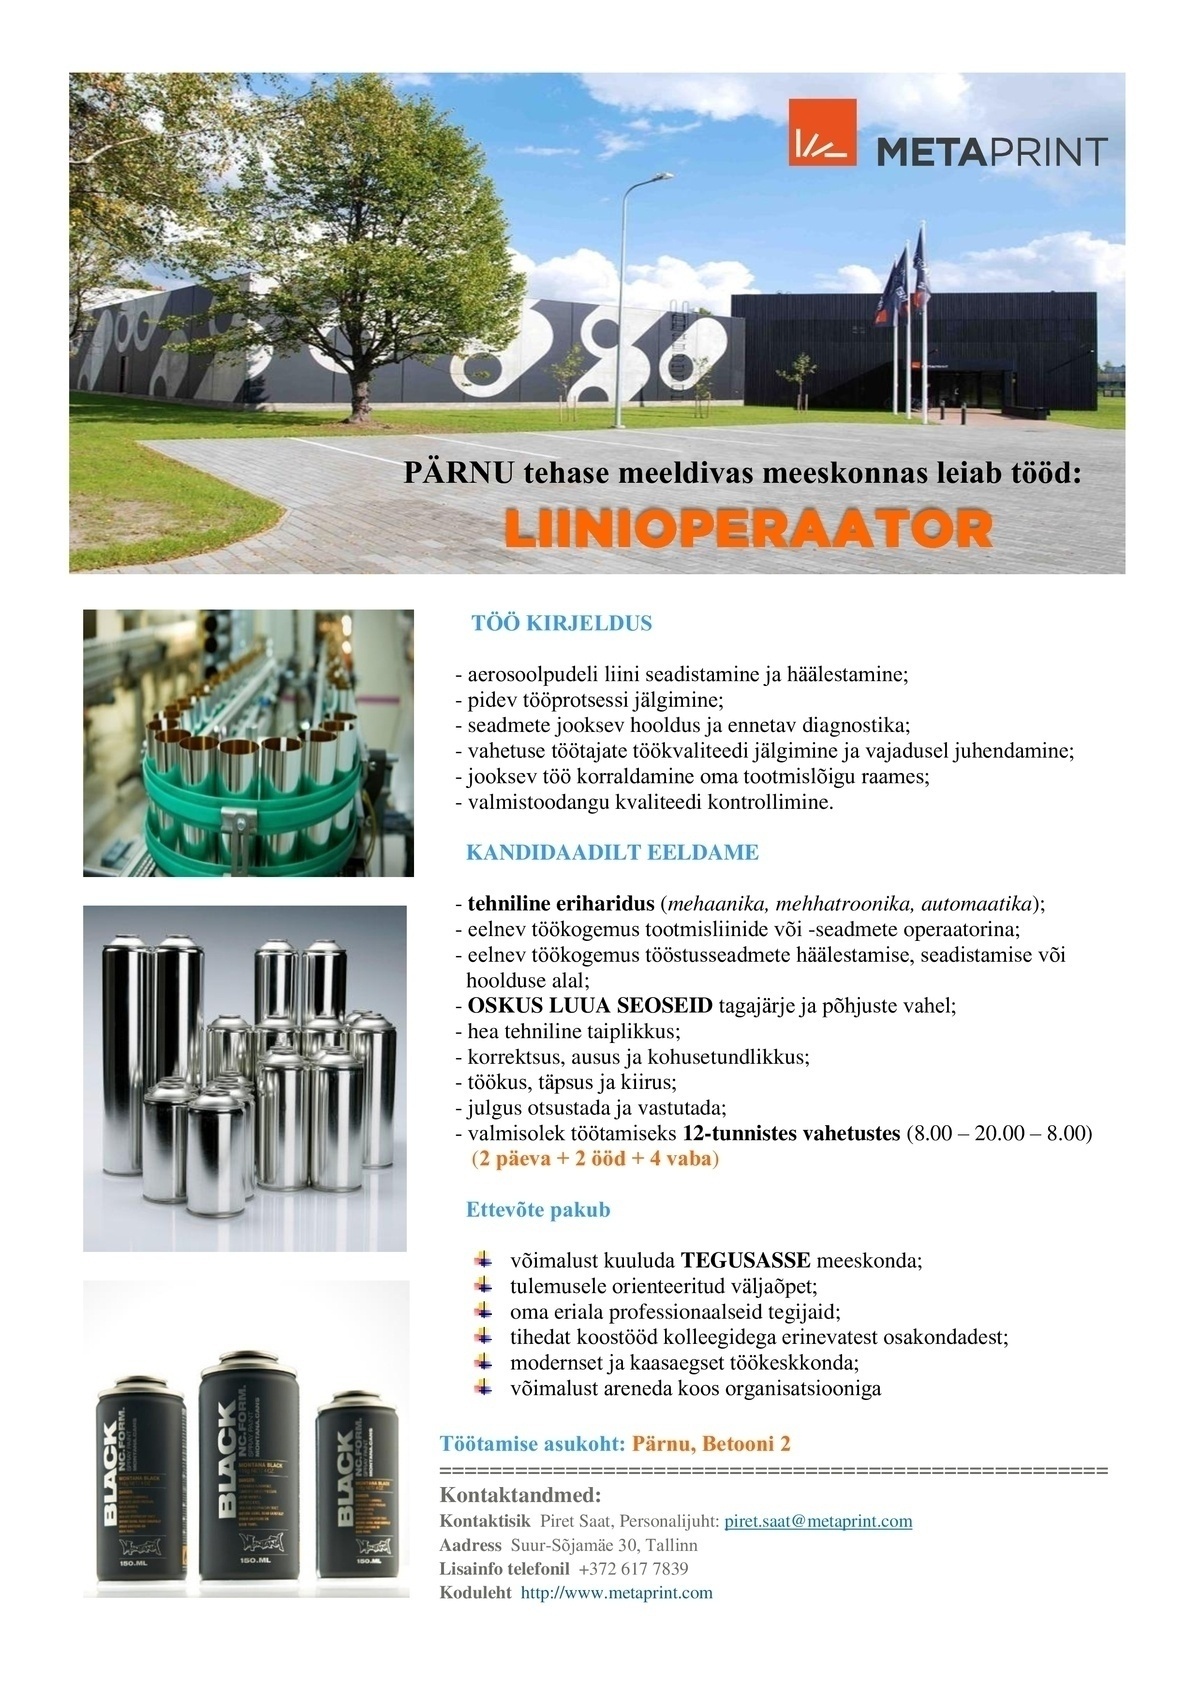 Metaprint AS Liinioperaator (Pärnu tehas)